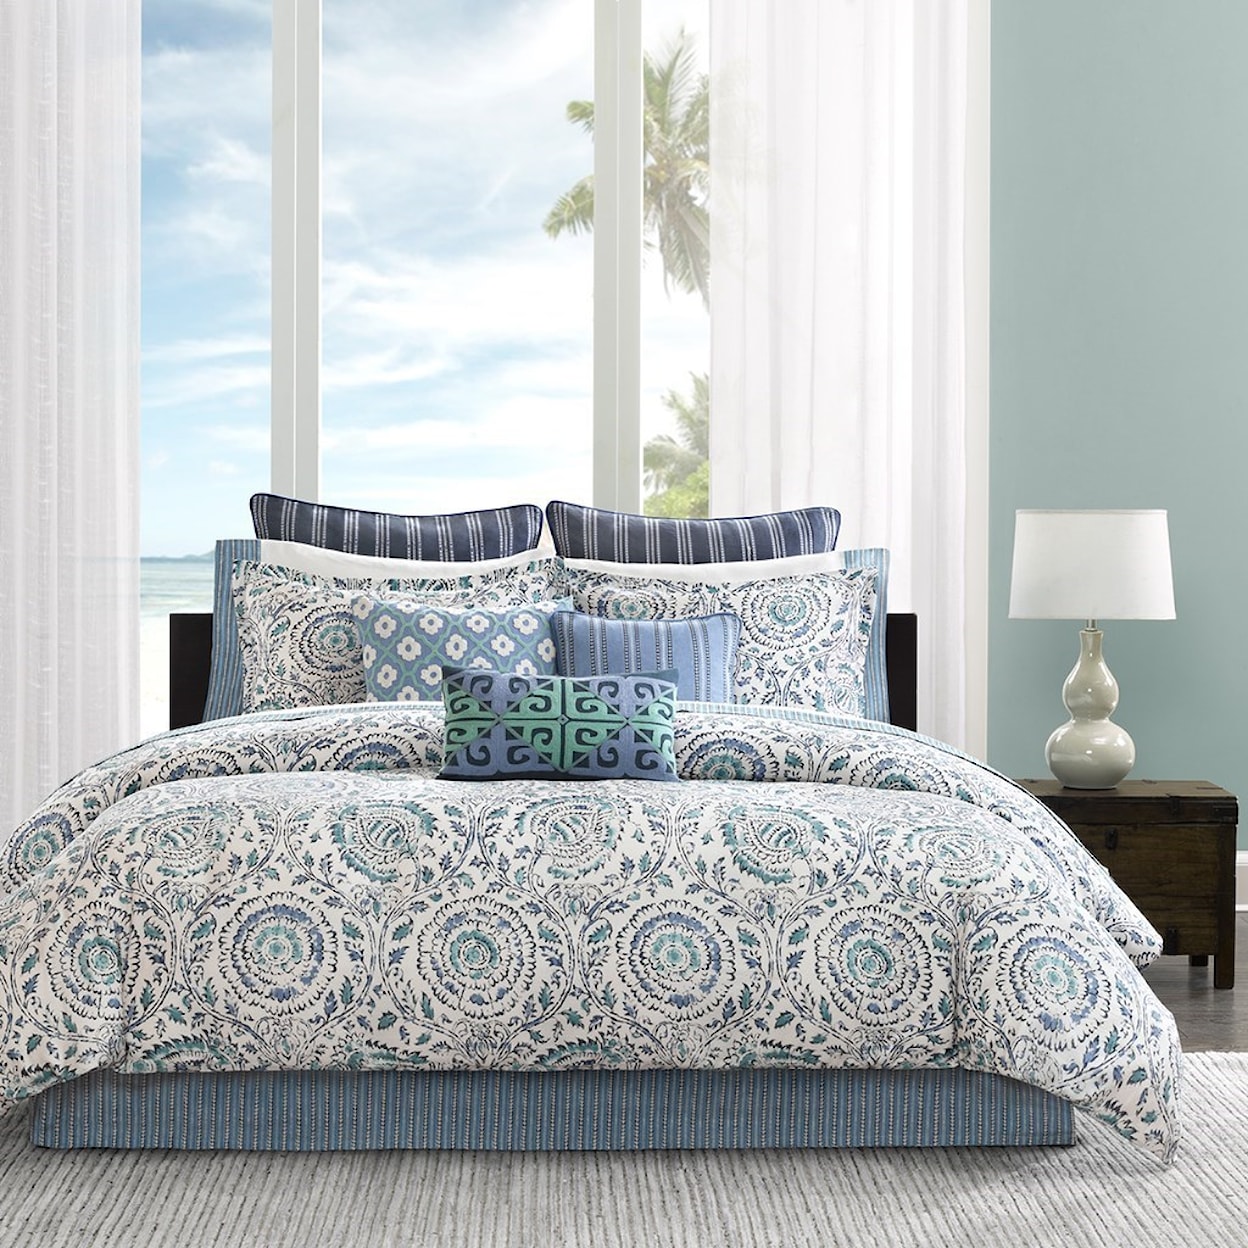 JLA Home Echo Design Queen Comforter Set